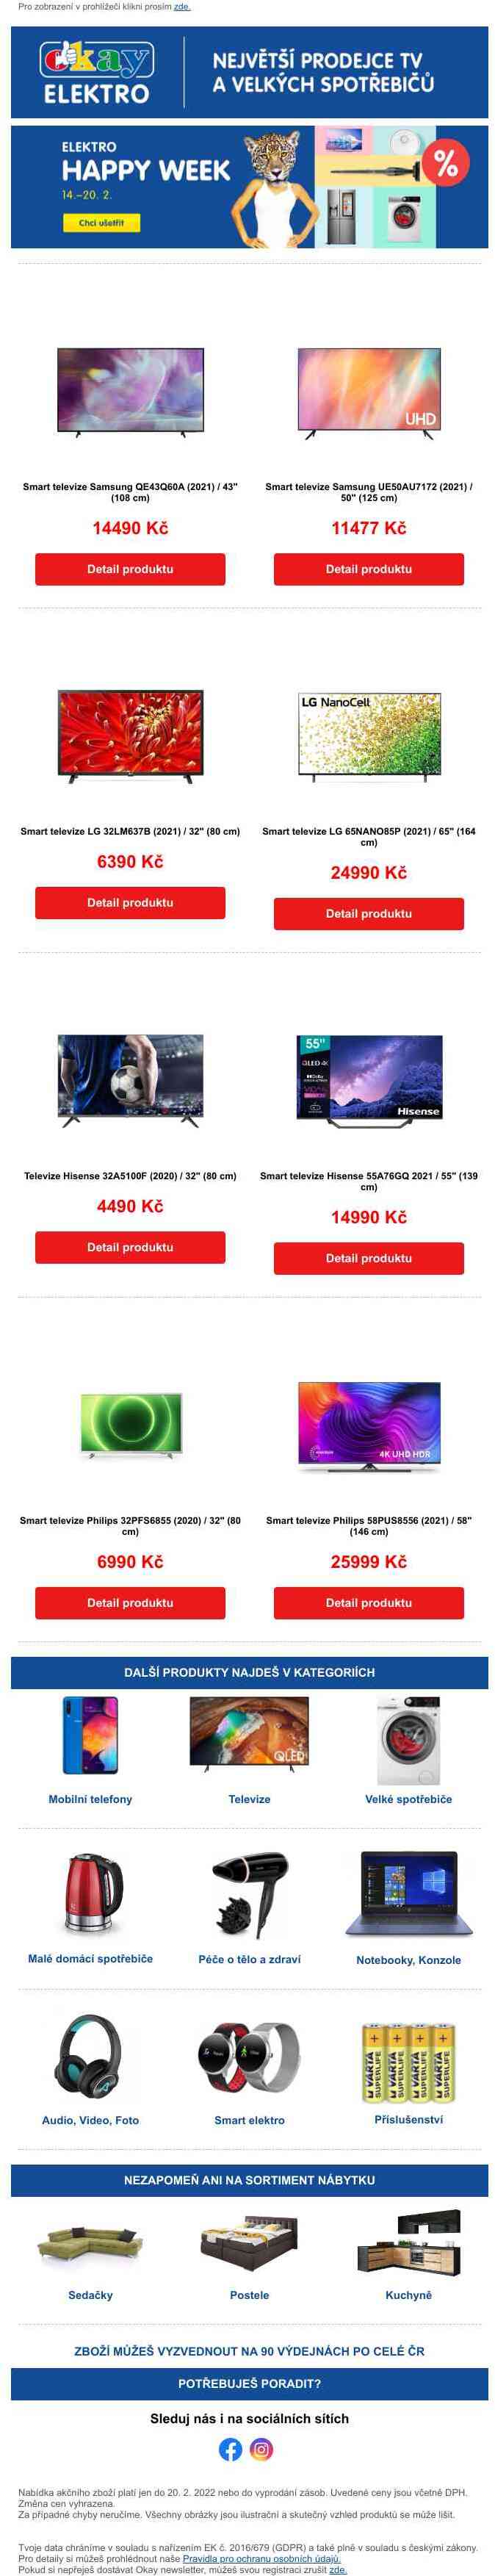 Nejprodávanější televize na Heurece značky Samsung